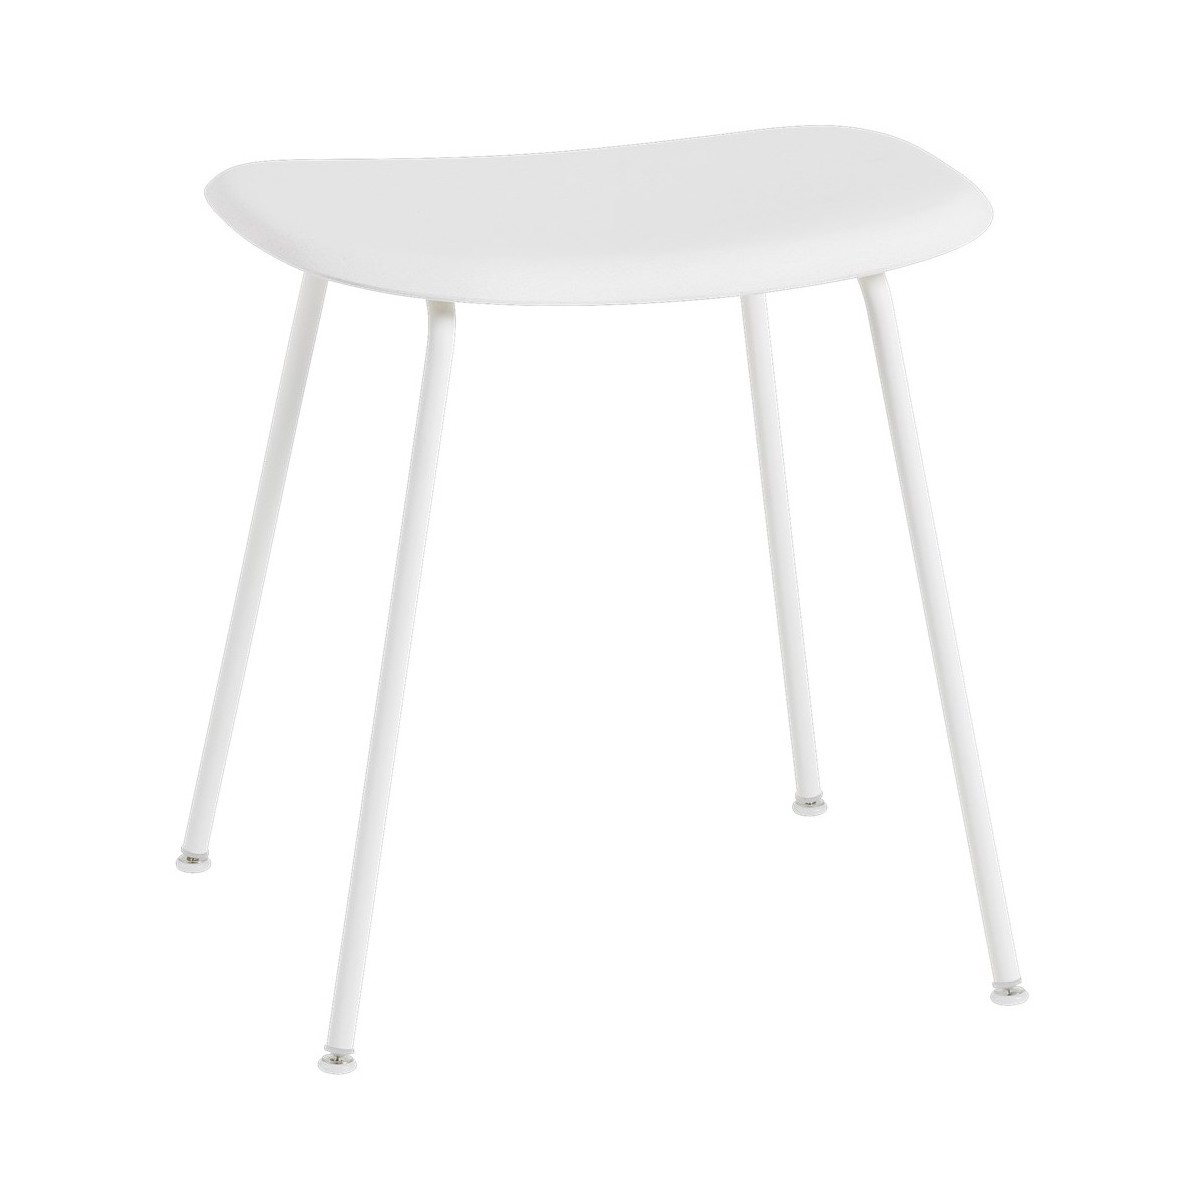 Fiber - stool - recycled plastic - white / white